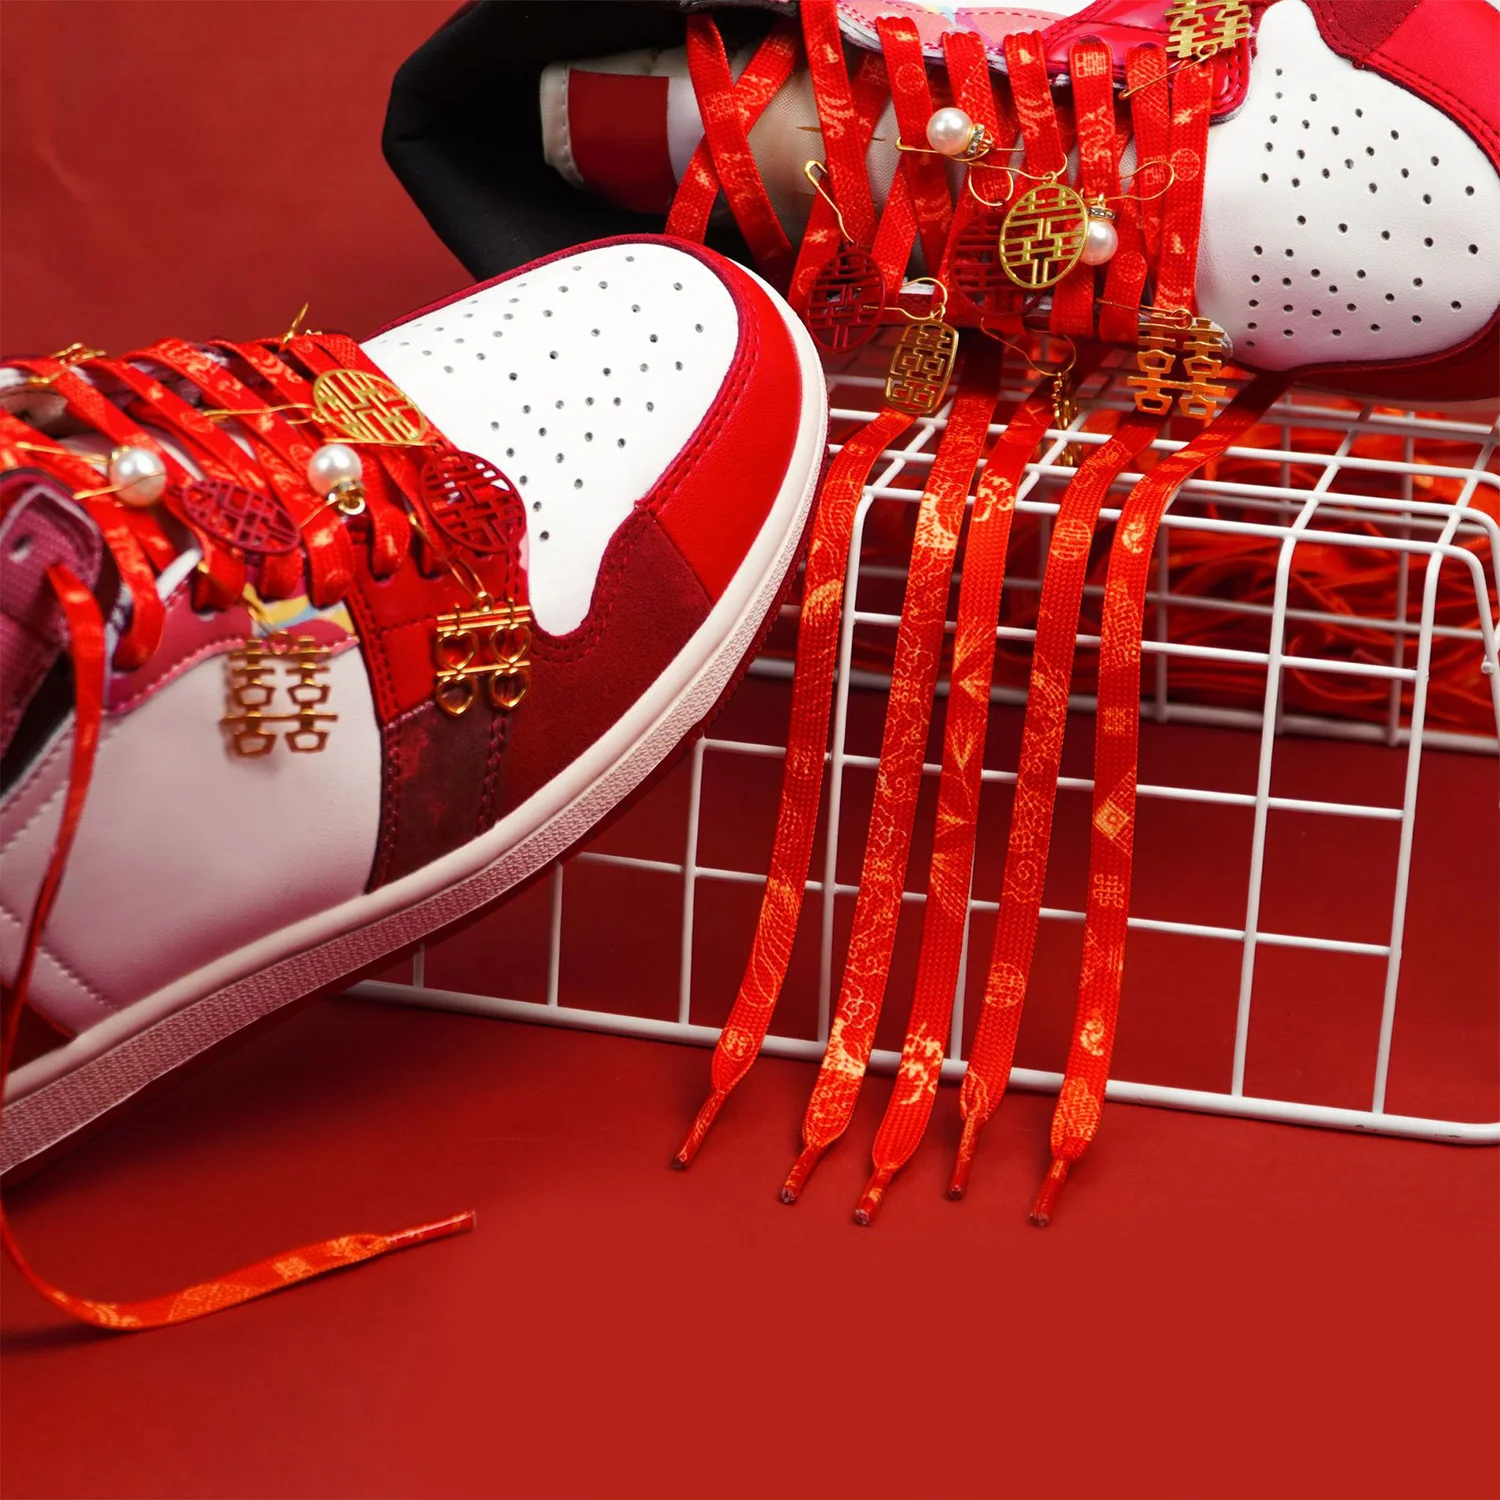 Moda Kişilik Çin Tarzı Kırmızı Ayakabı düğün ayakkabısı Bağcıkları Erkekler Kadınlar Sneakers Düşük üst Tuval Shoestrings İyi Şanslar için